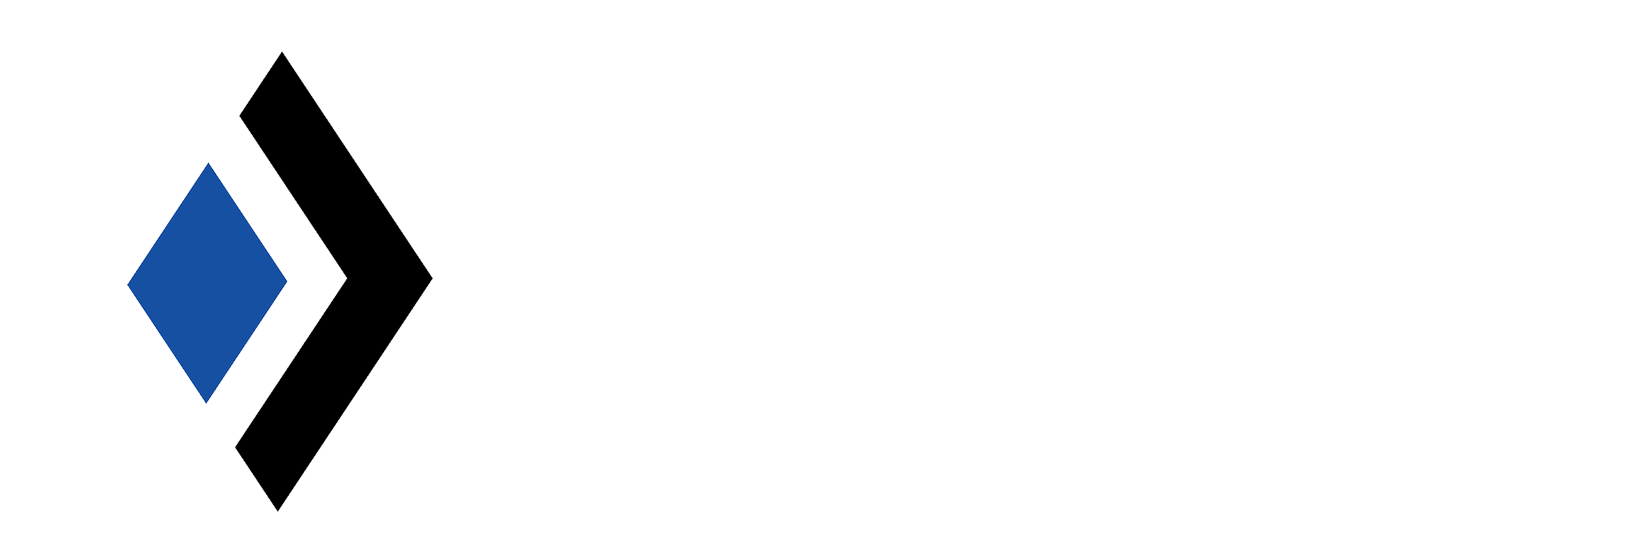 Doope, Inc